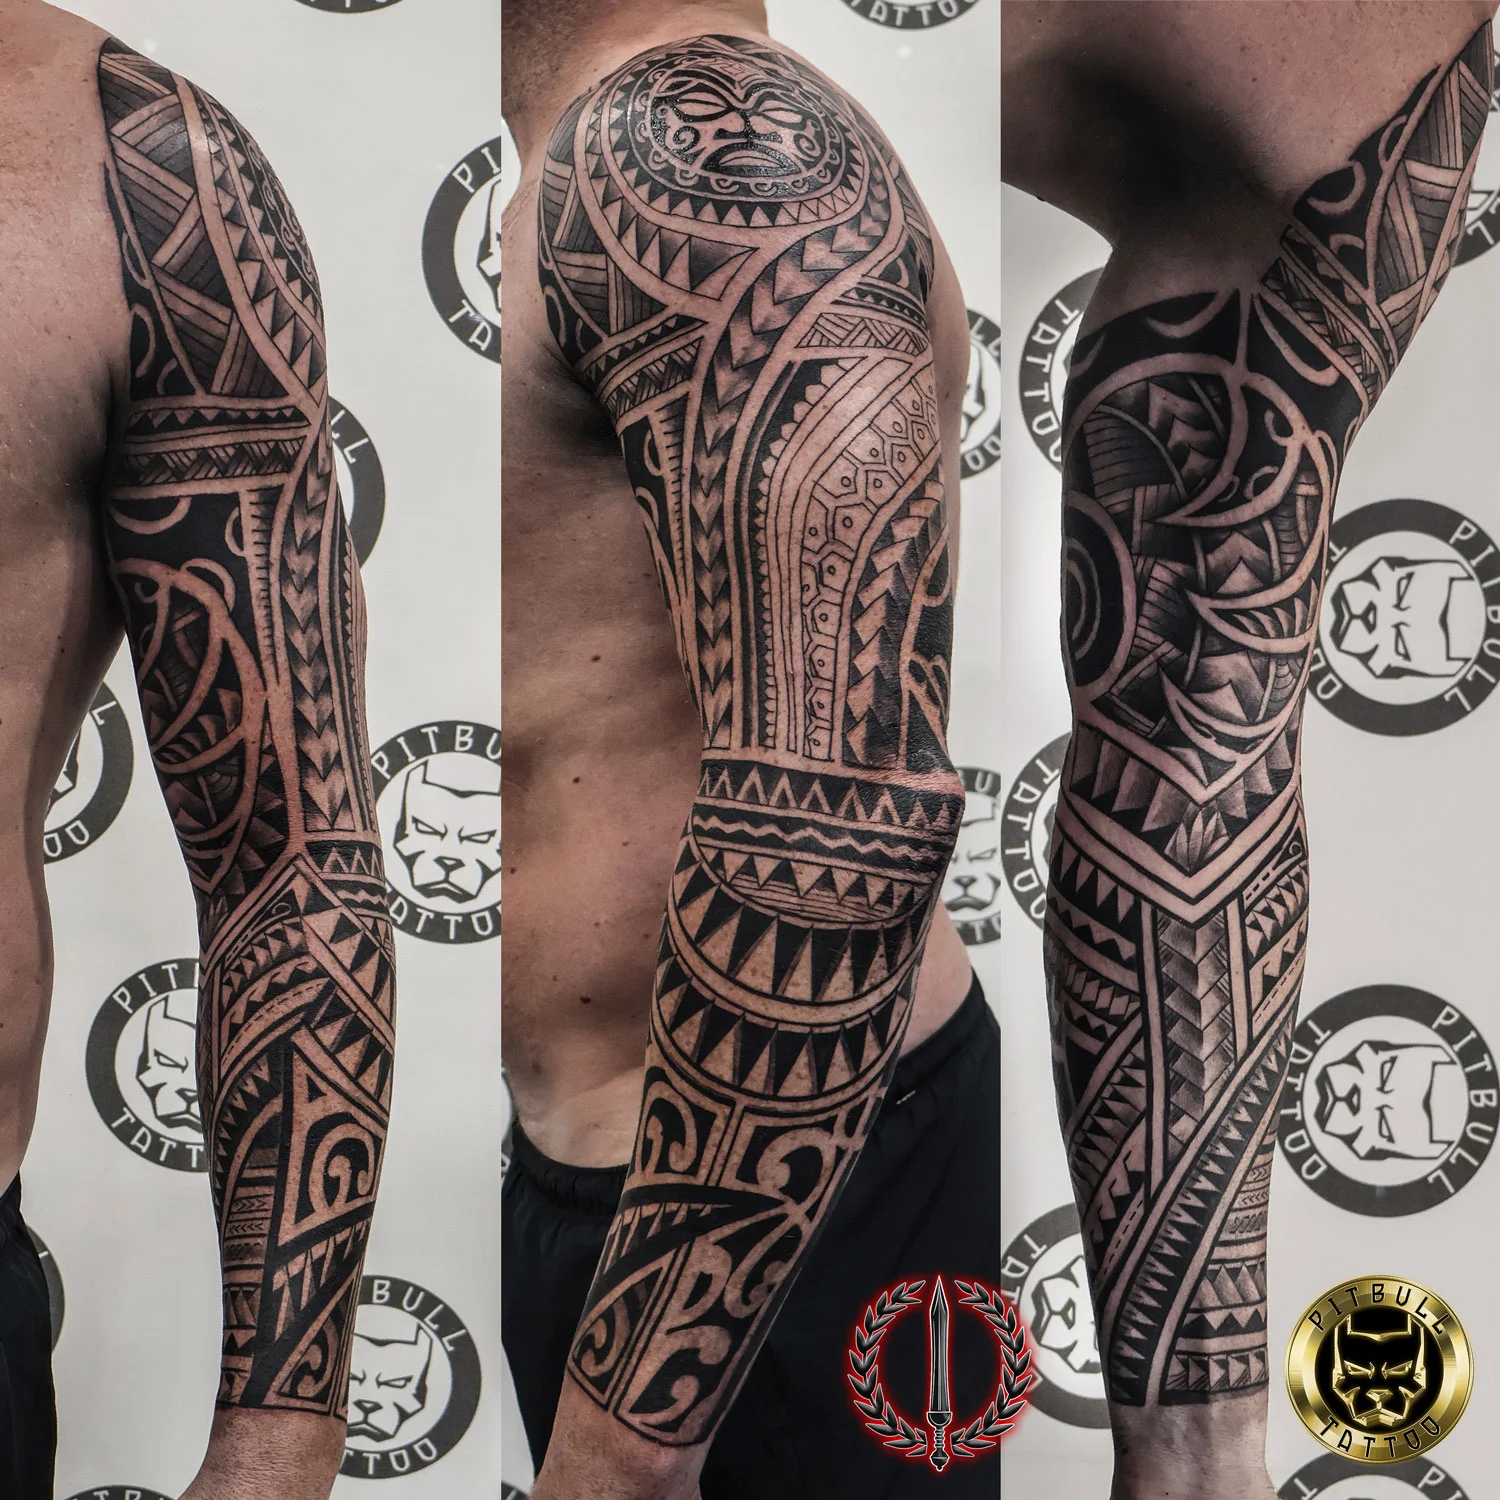 Maori/tribal tattoos